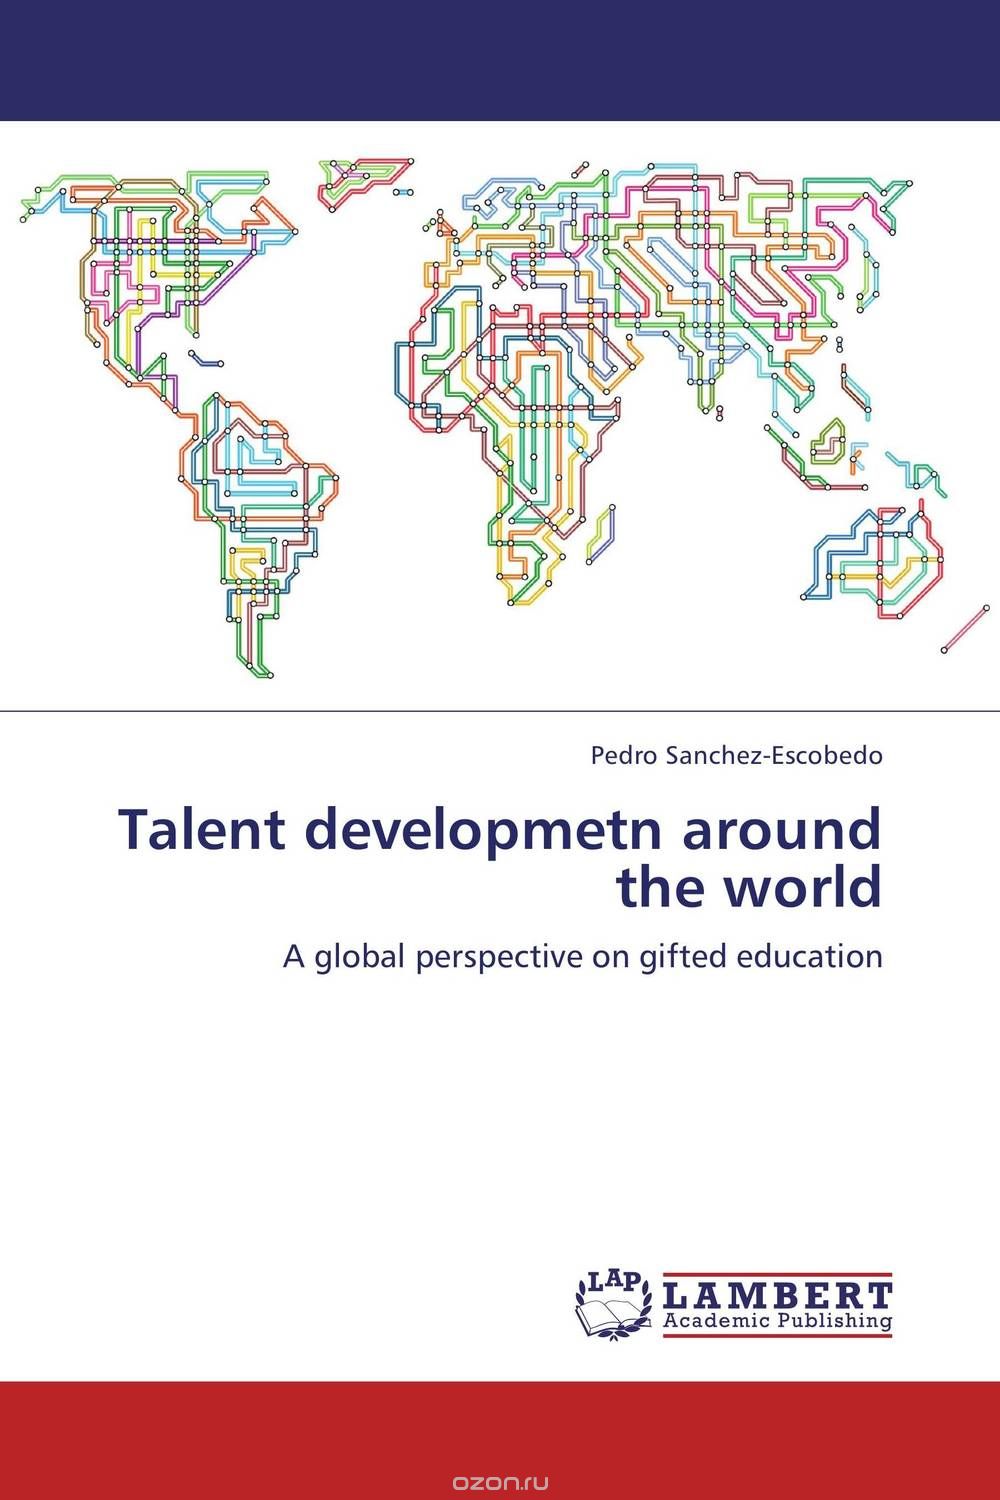 Скачать книгу "Talent developmetn around the world"